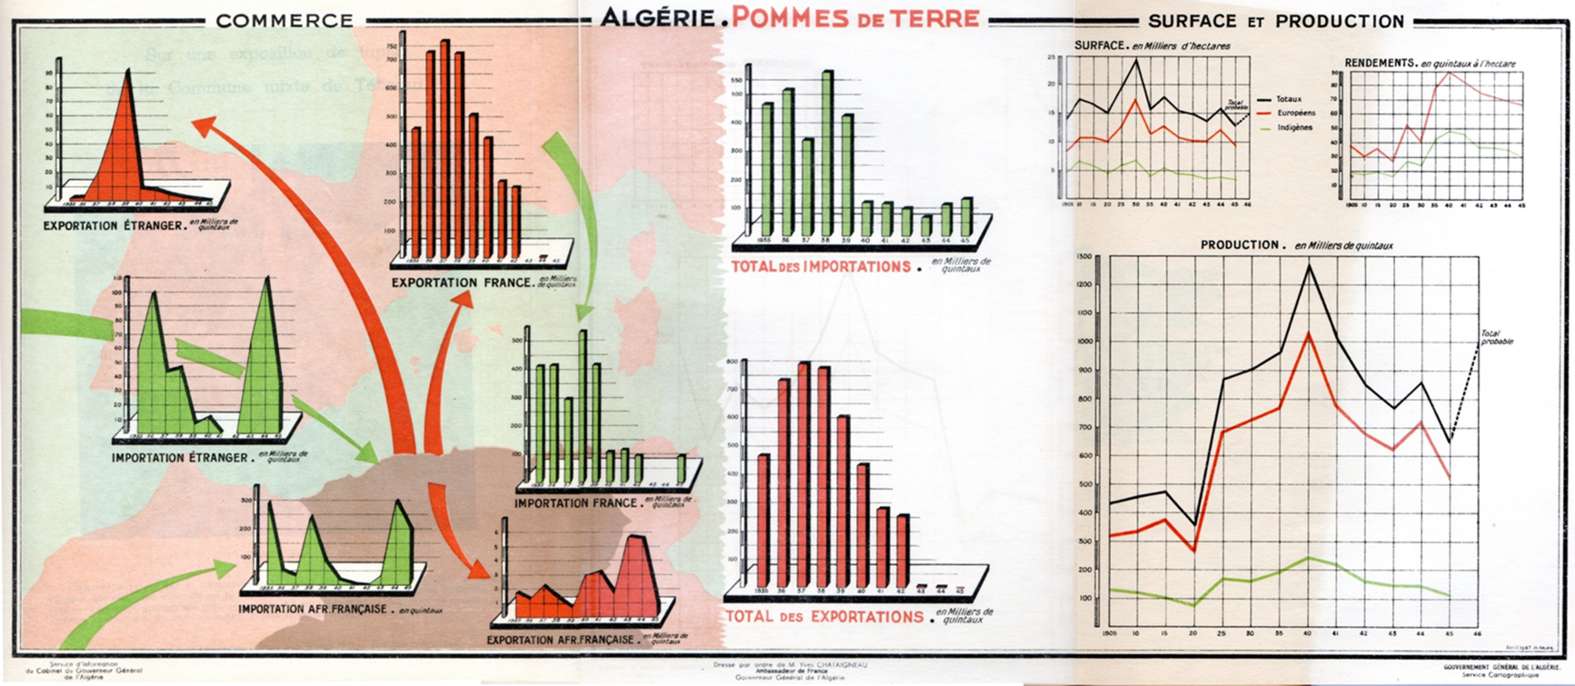 La culture et le commerce de la pomme de terre en Algérie 